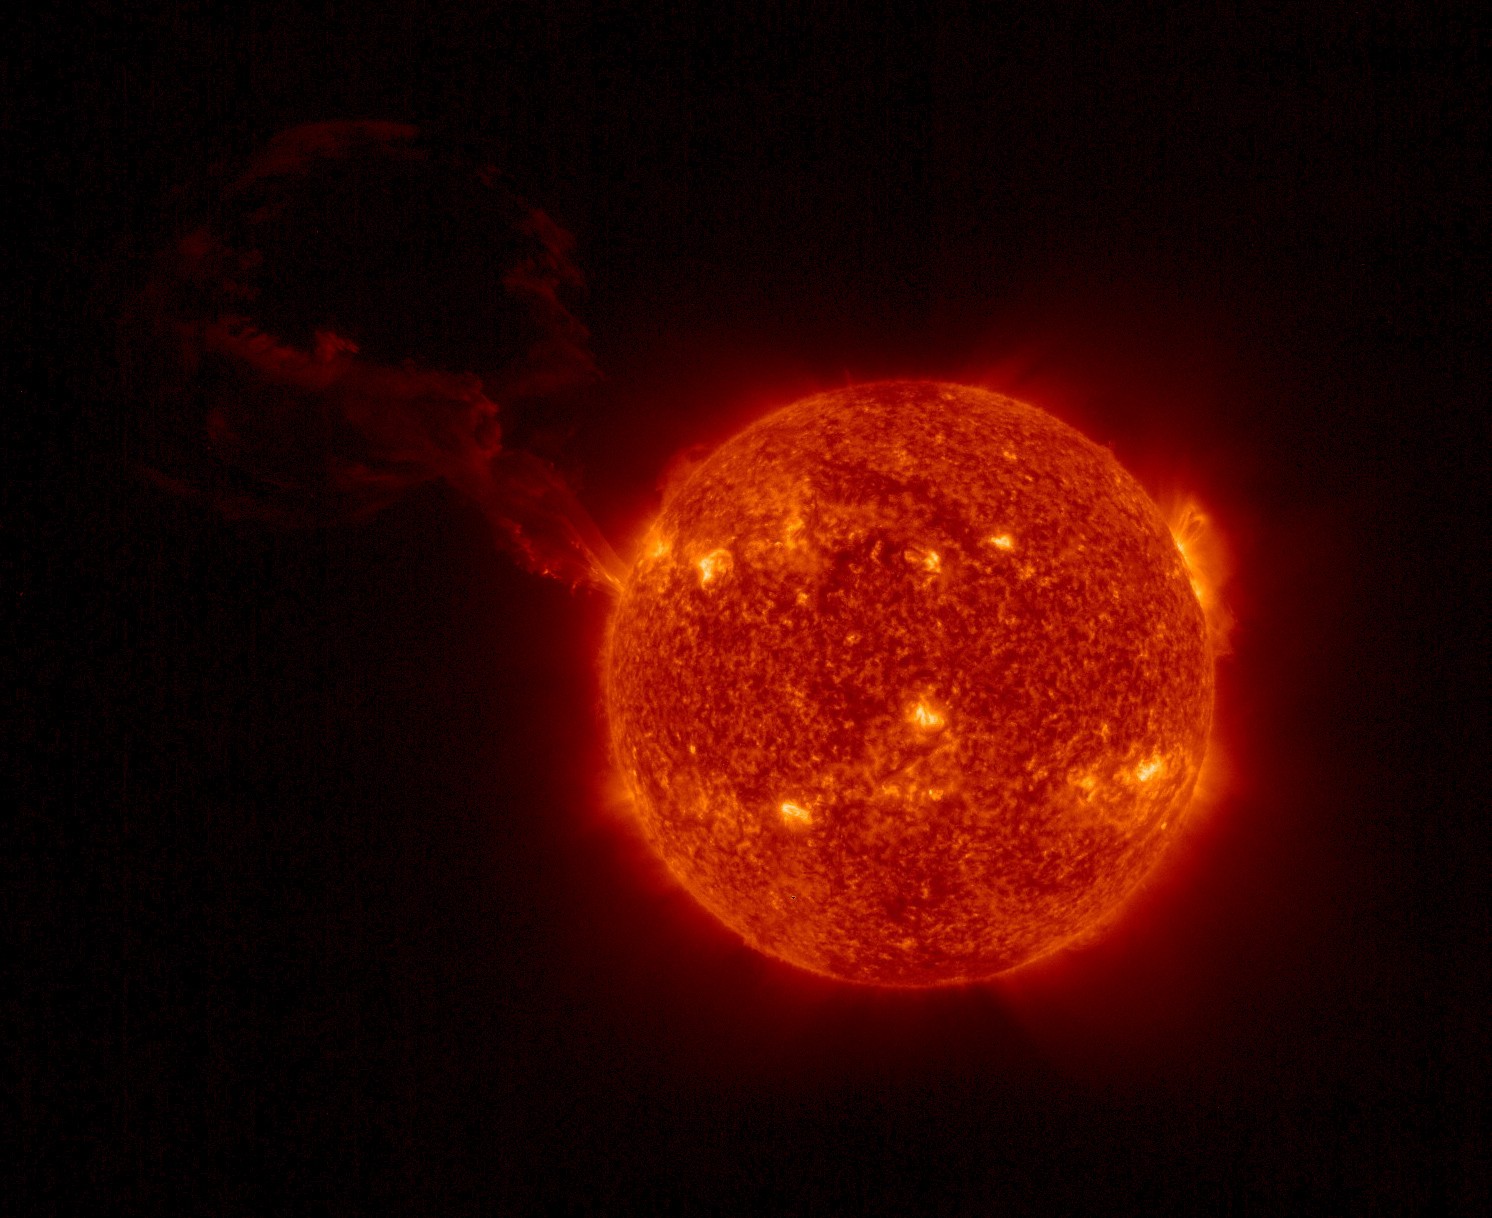 Sonda Solar Orbiter faz registro inédito de erupção solar gigante (Foto: Solar Orbiter/EUI Team/ESA & NASA)